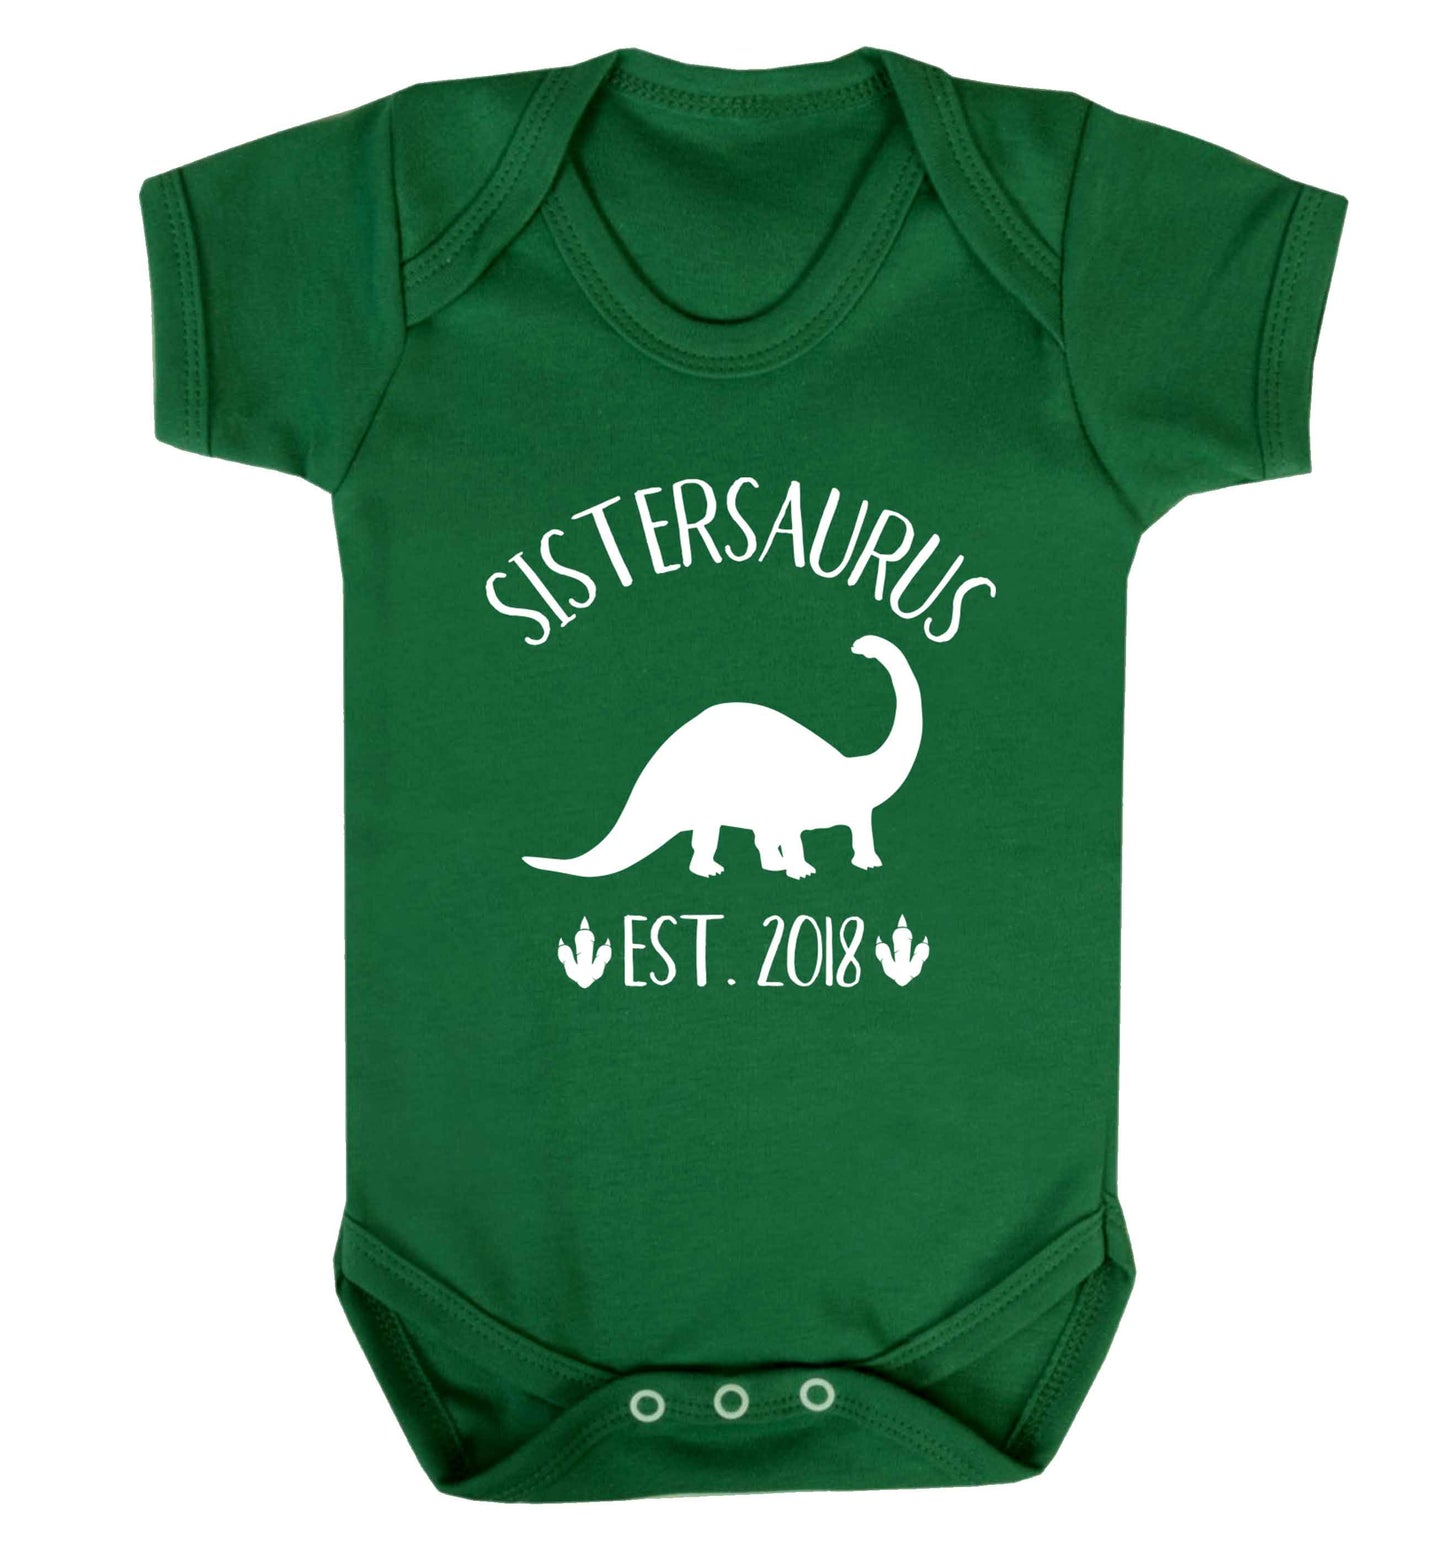 Personalised sistersaurus since (custom date) Baby Vest green 18-24 months